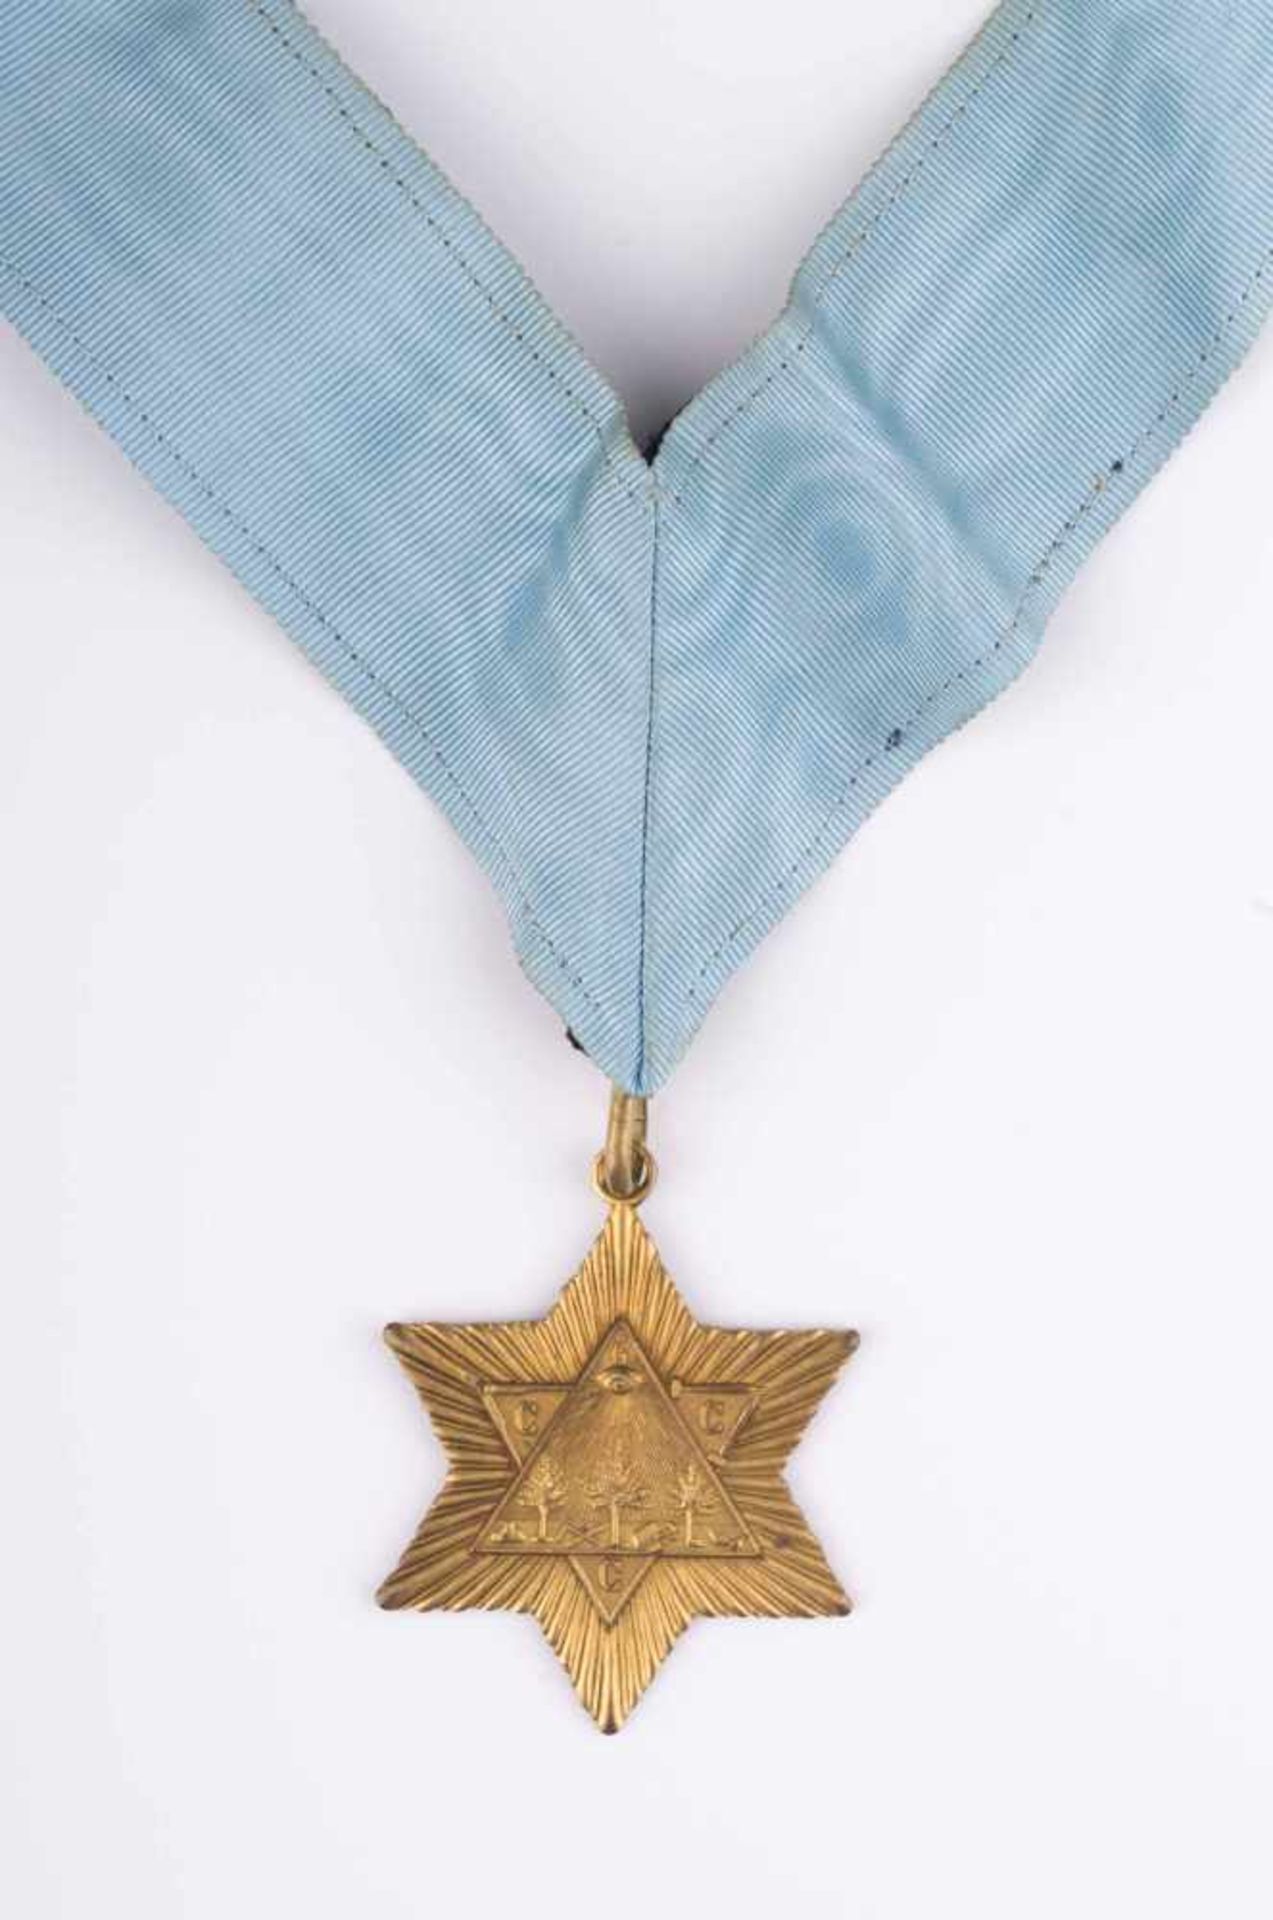 Freimaurer Orden/Anhänger / Freemason medal/pendant auf dem Orden das allsehende Auge, rückseitig - Bild 2 aus 8